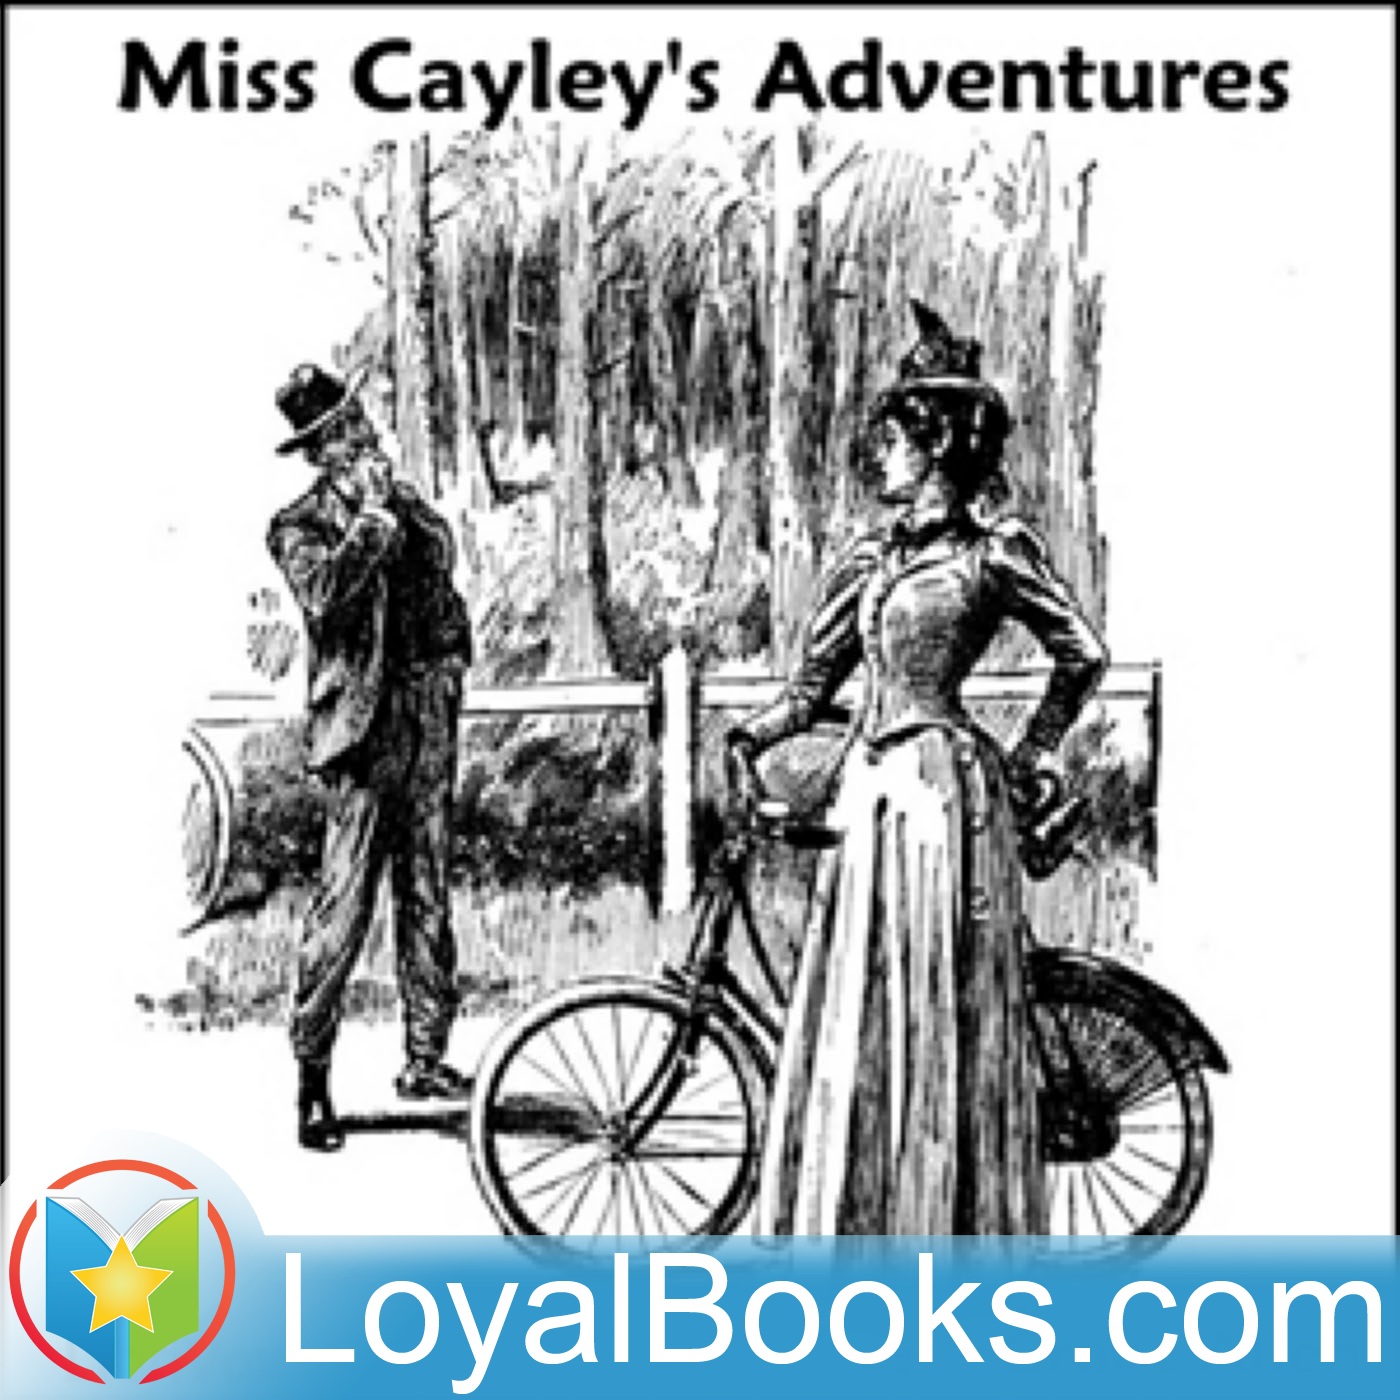 Miss Cayley's Adventures by Grant Allen